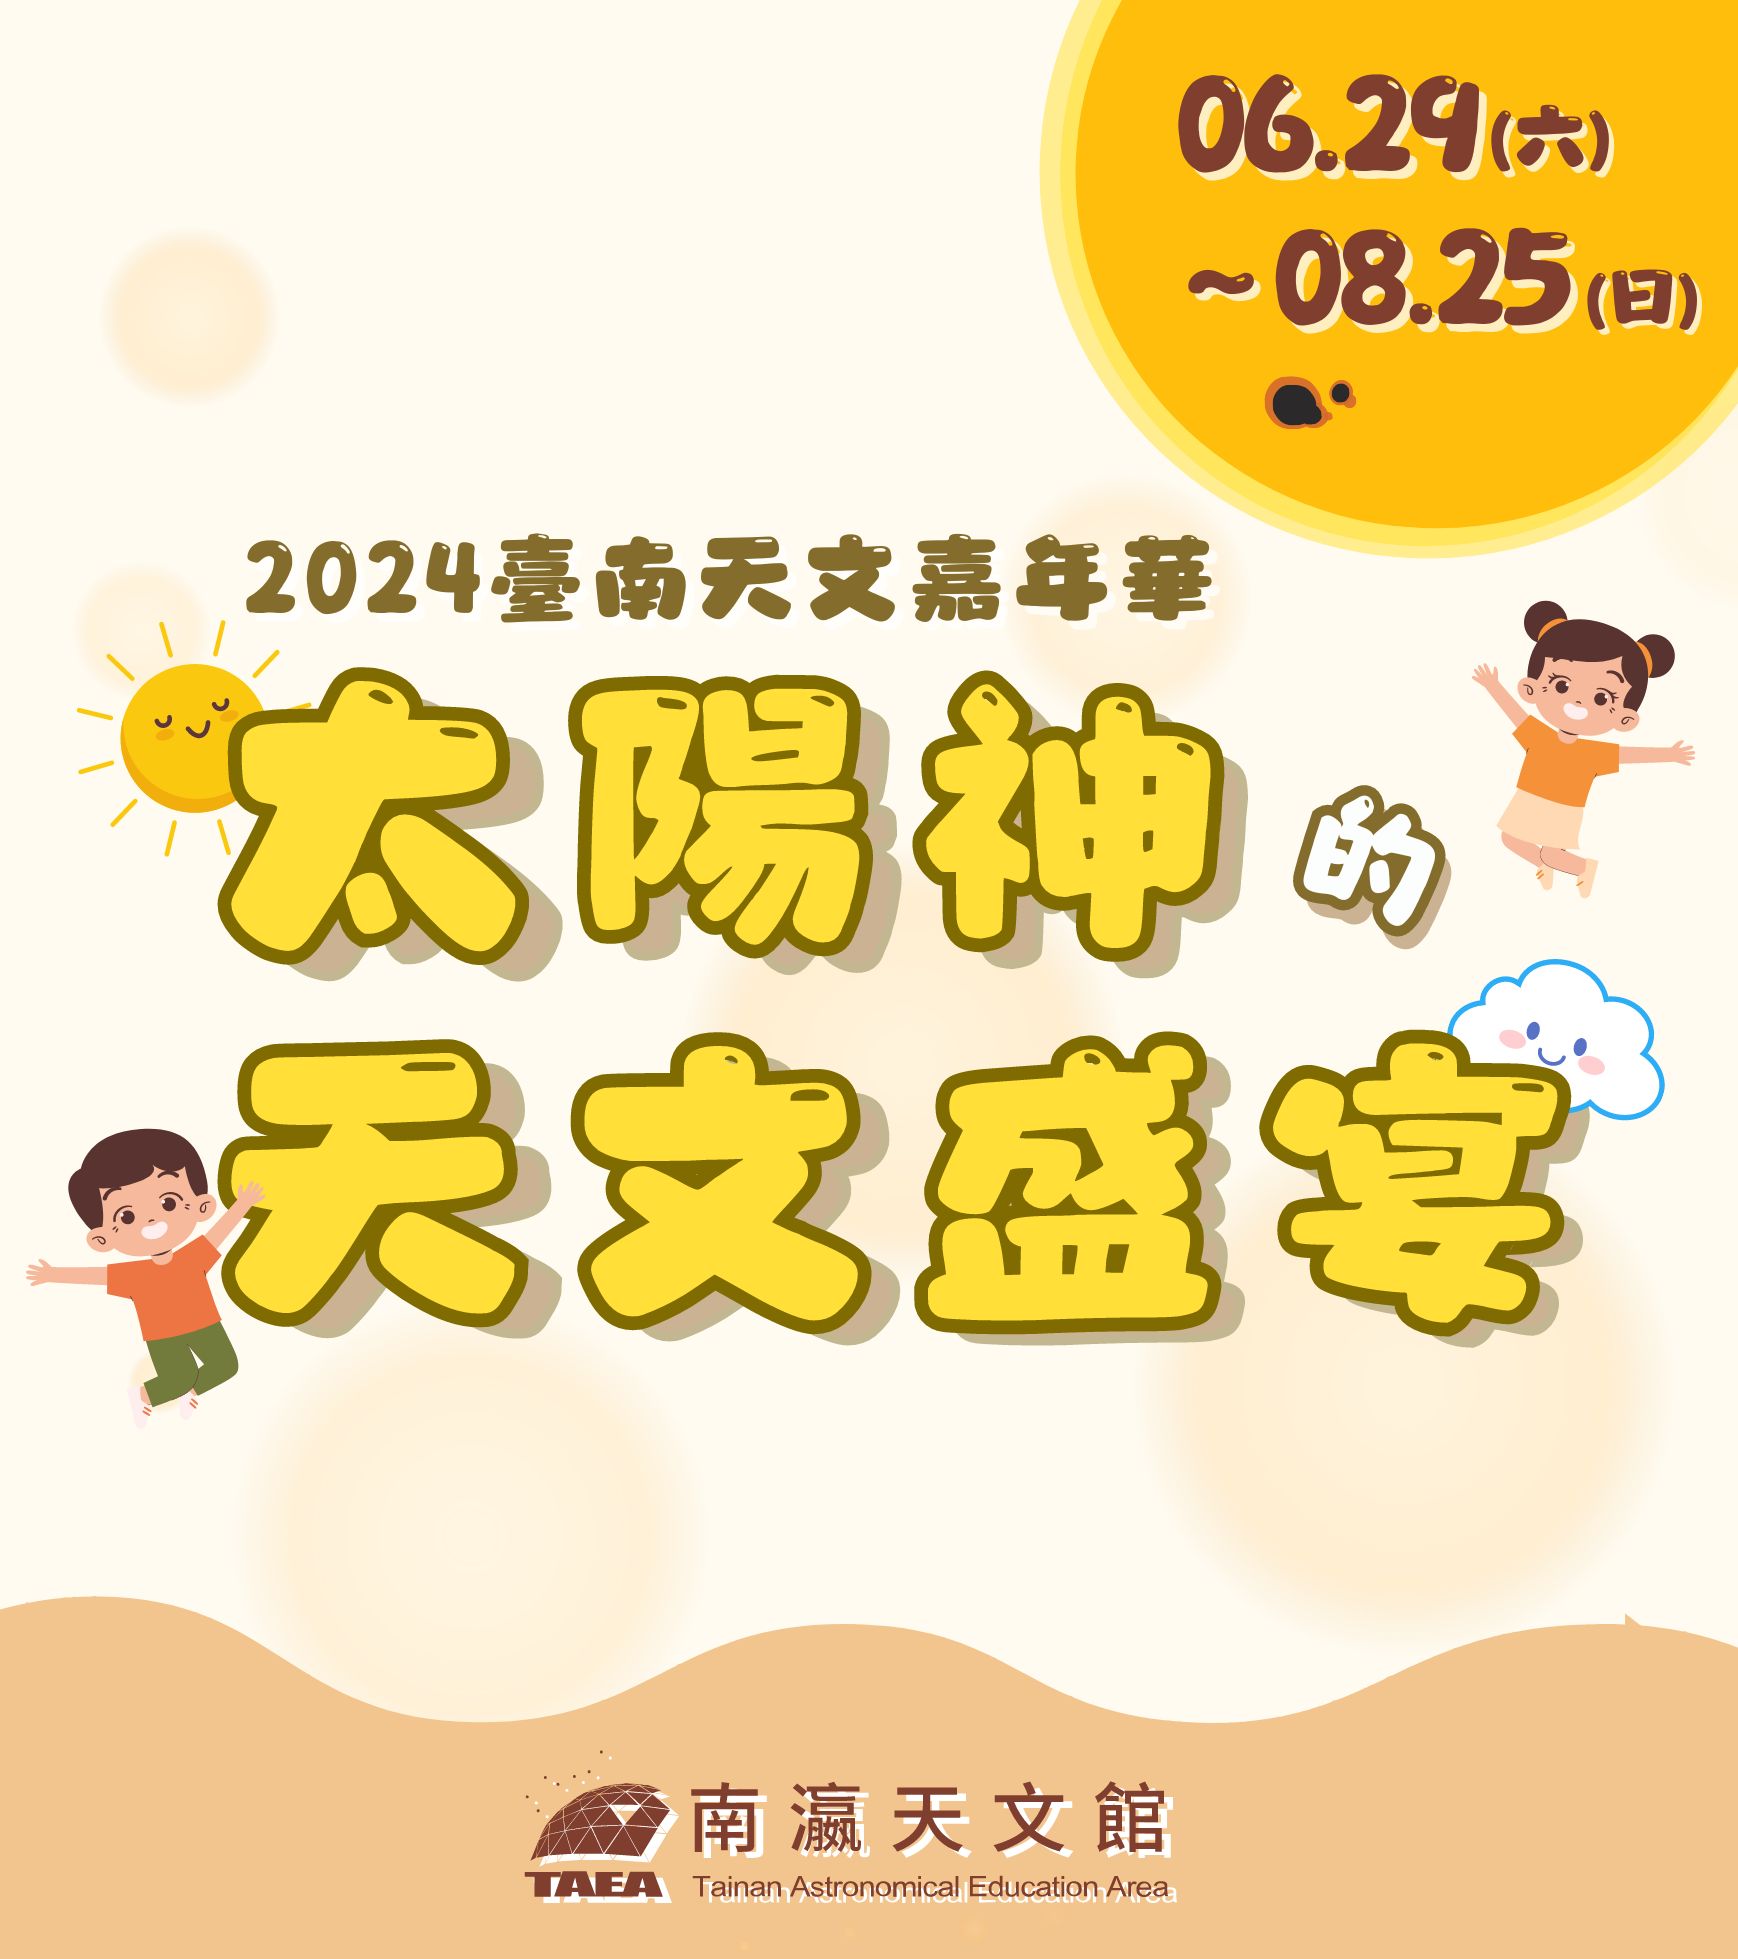 【活動公告】2024臺南天文嘉年華「太陽神的天文盛宴」系列活動